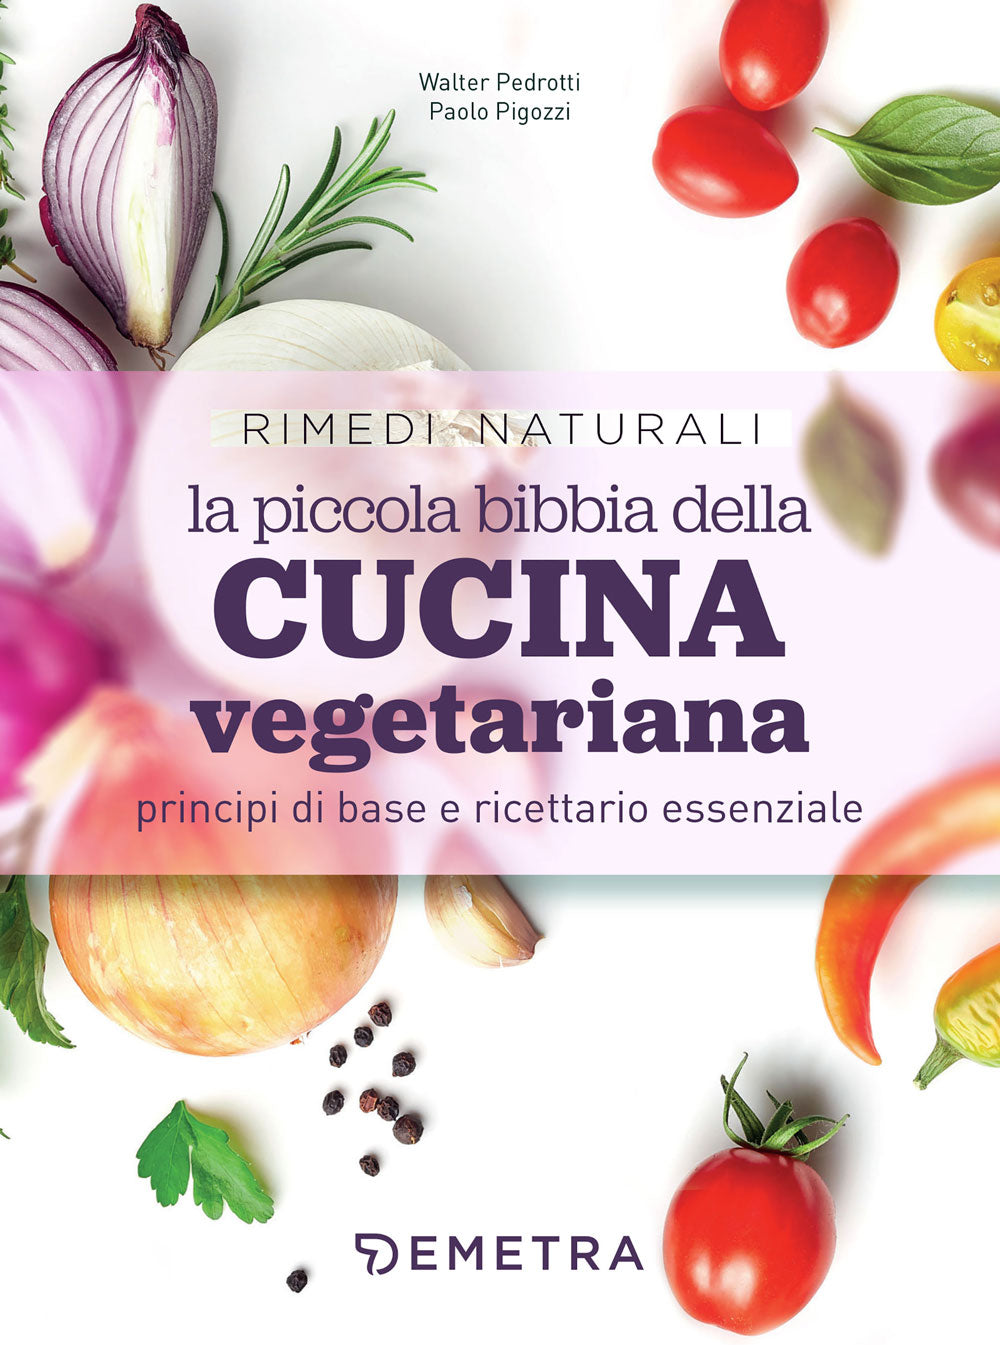 La piccola bibbia della cucina vegetariana, Walter Pedrotti, Paolo Pigozzi